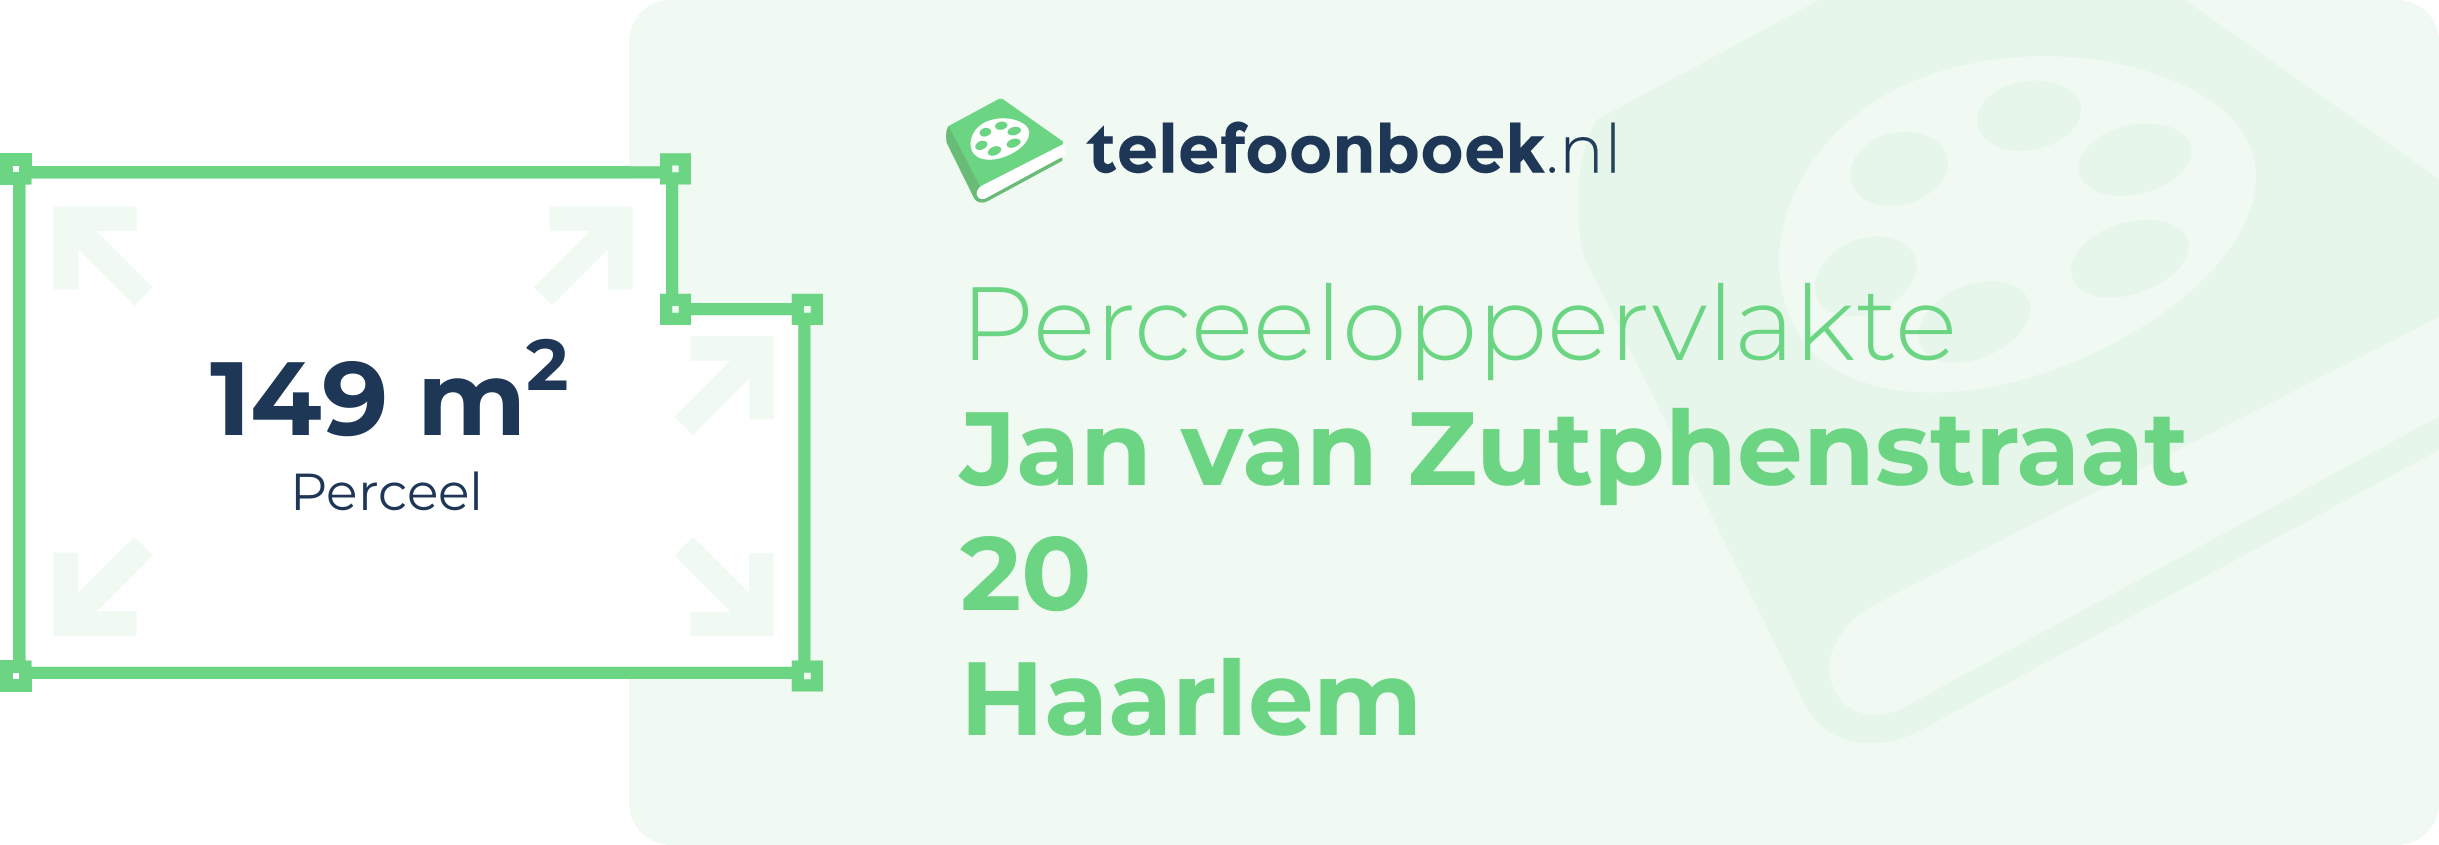 Perceeloppervlakte Jan Van Zutphenstraat 20 Haarlem